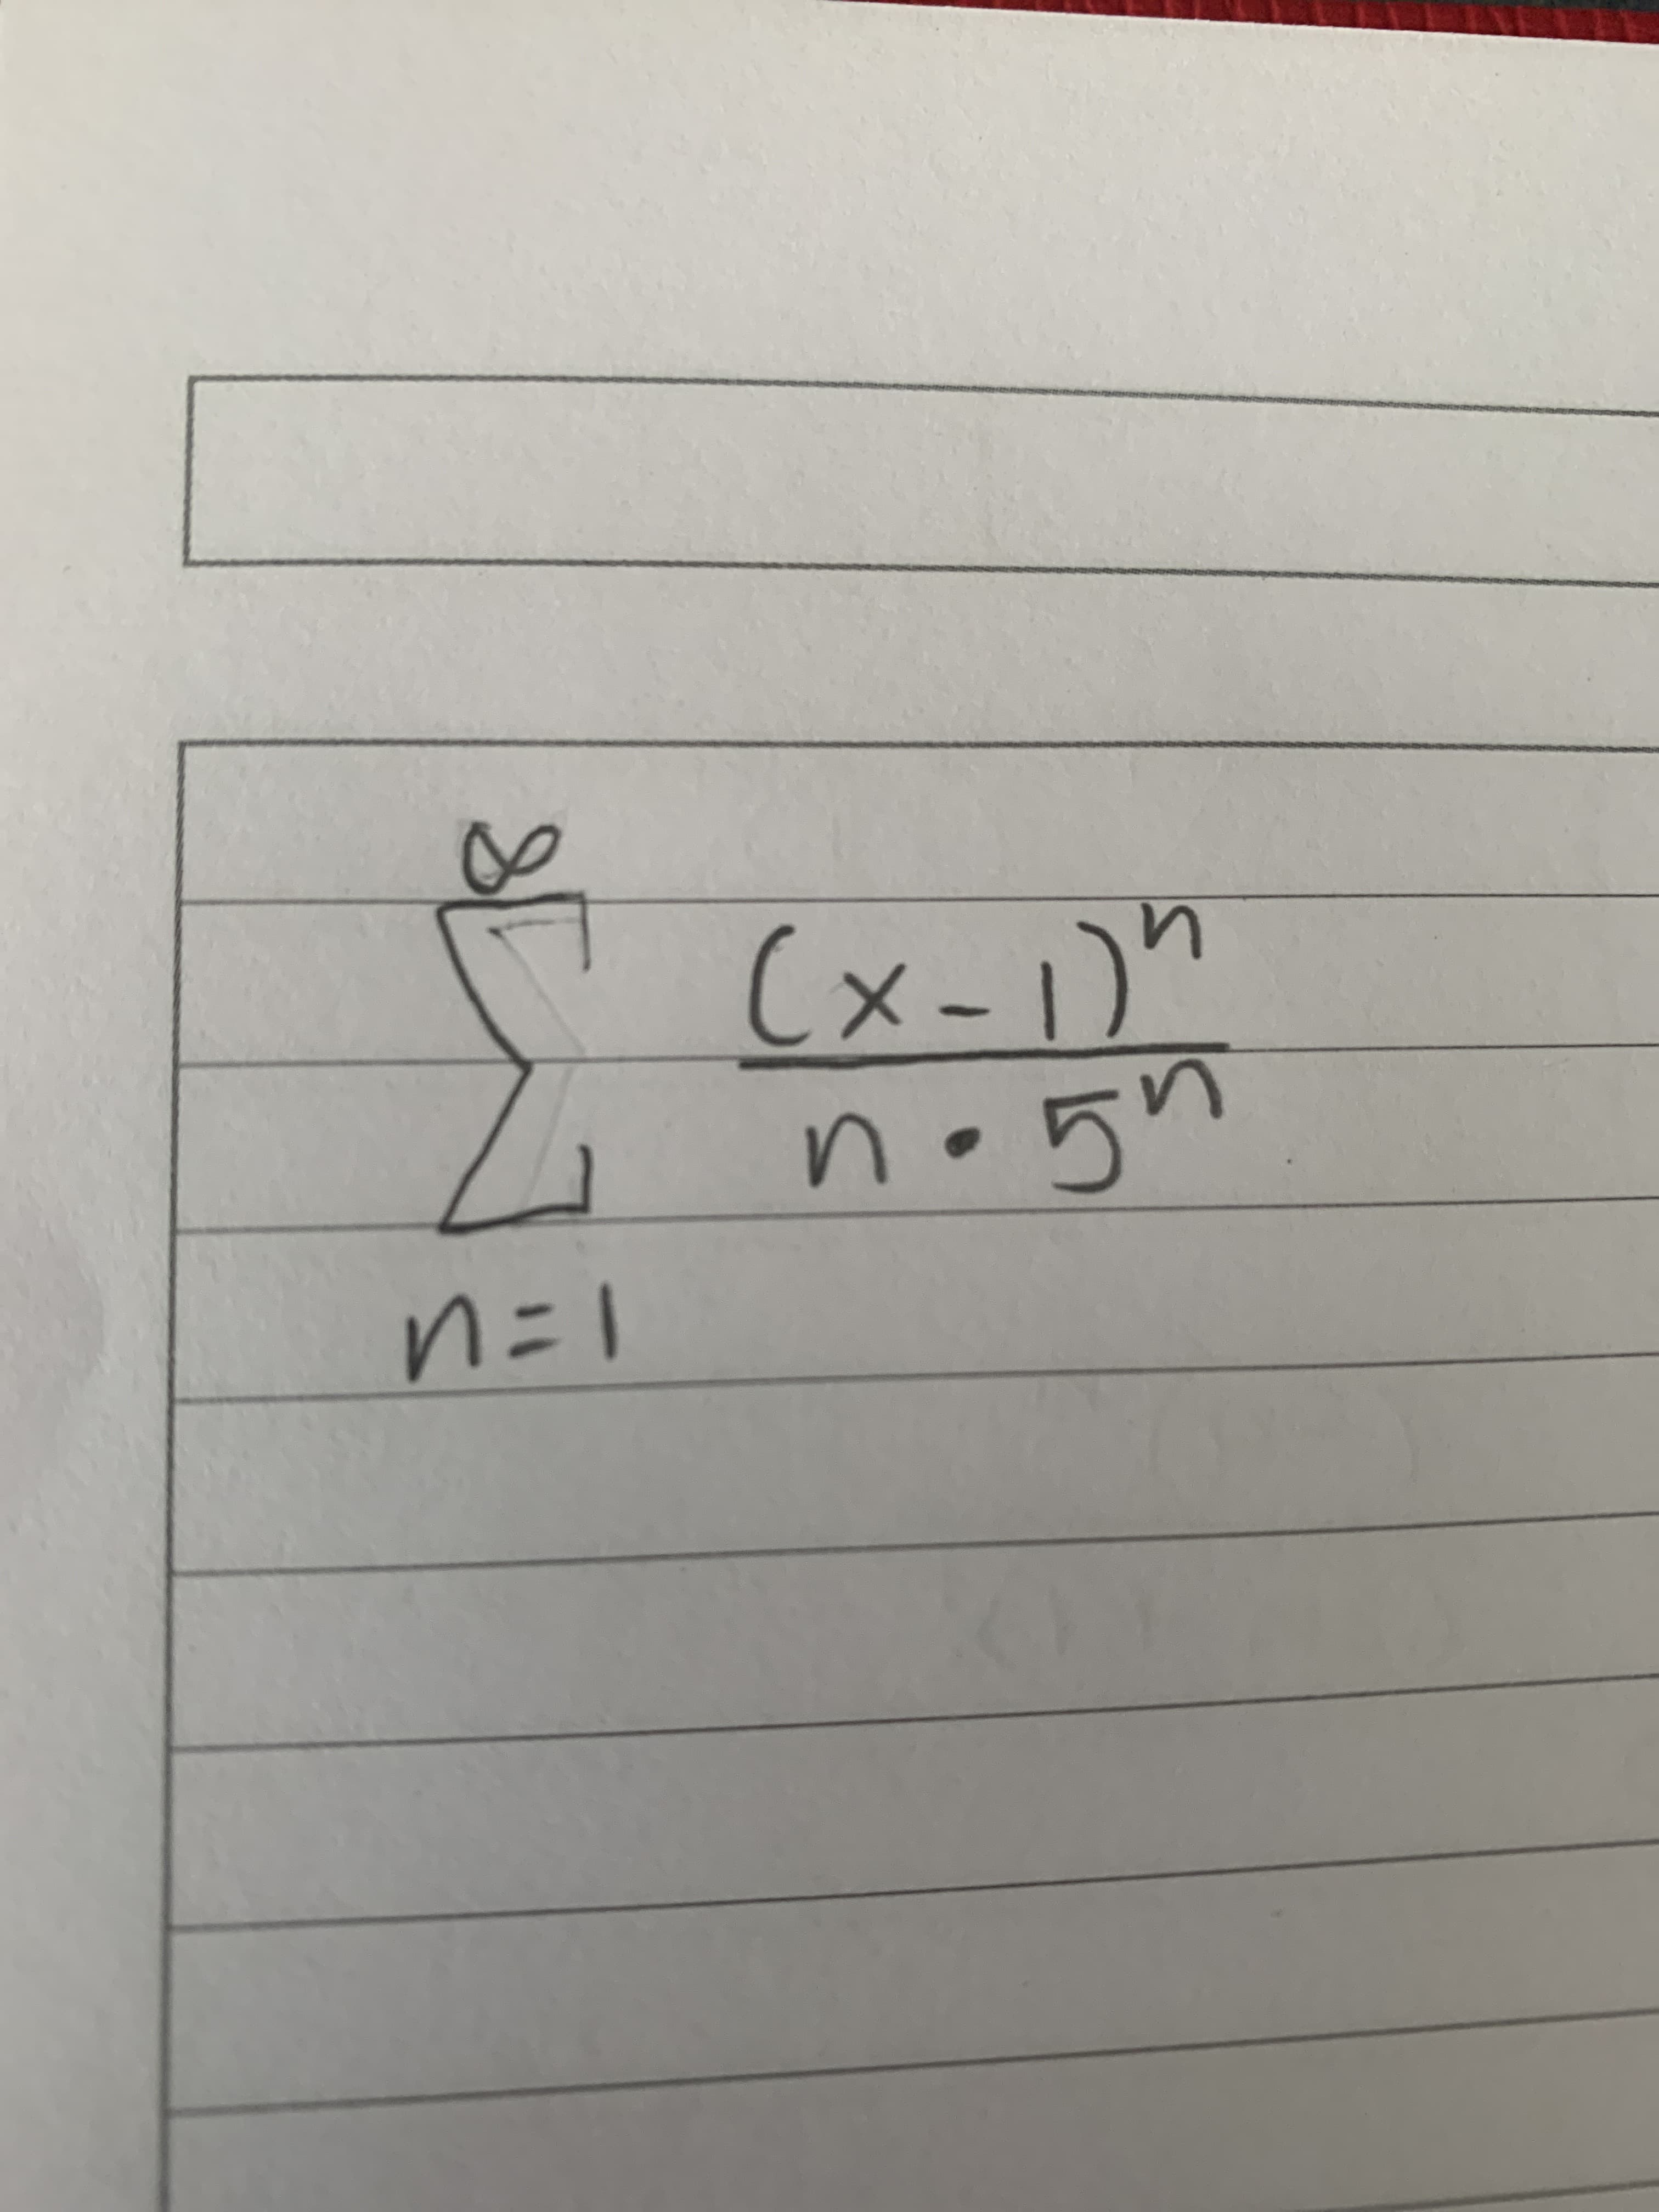 (x-1)"
4n.5n
n=1
